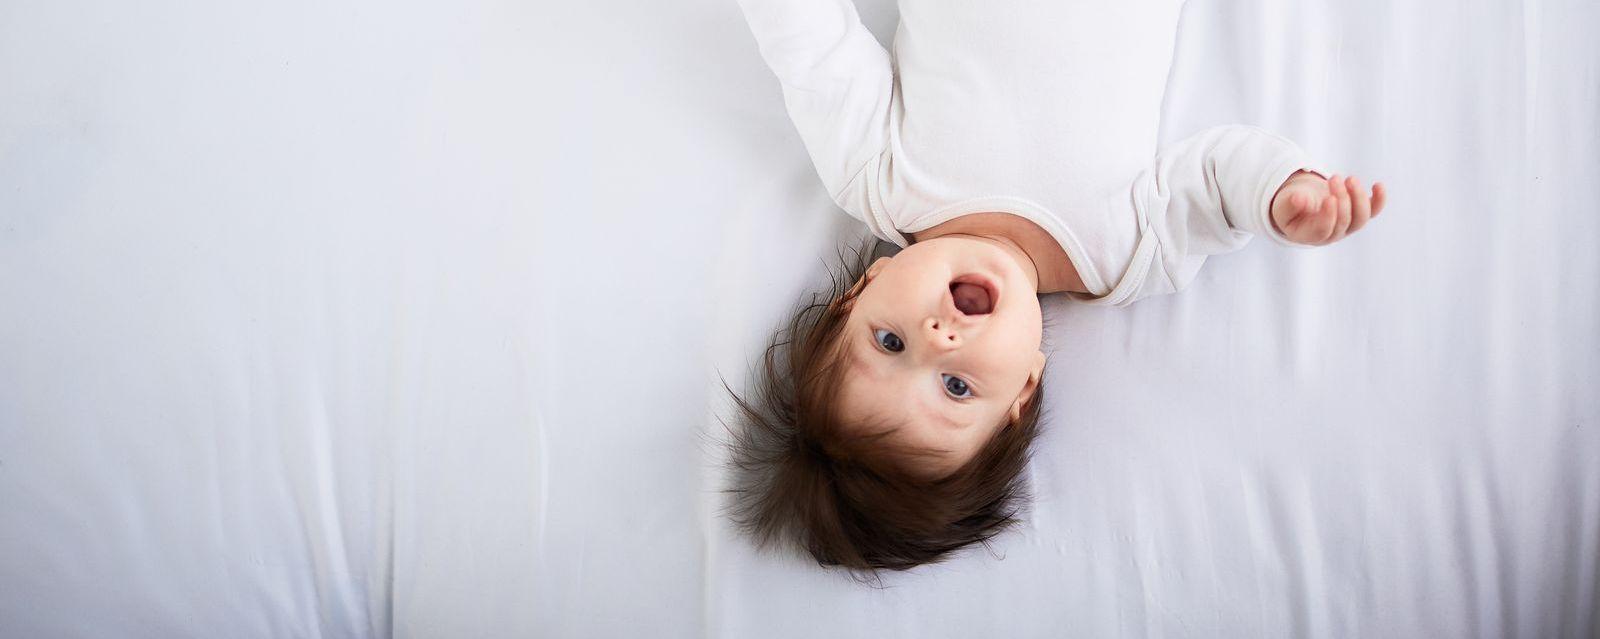 7 причин, почему вы никак не можете уложить детей спать